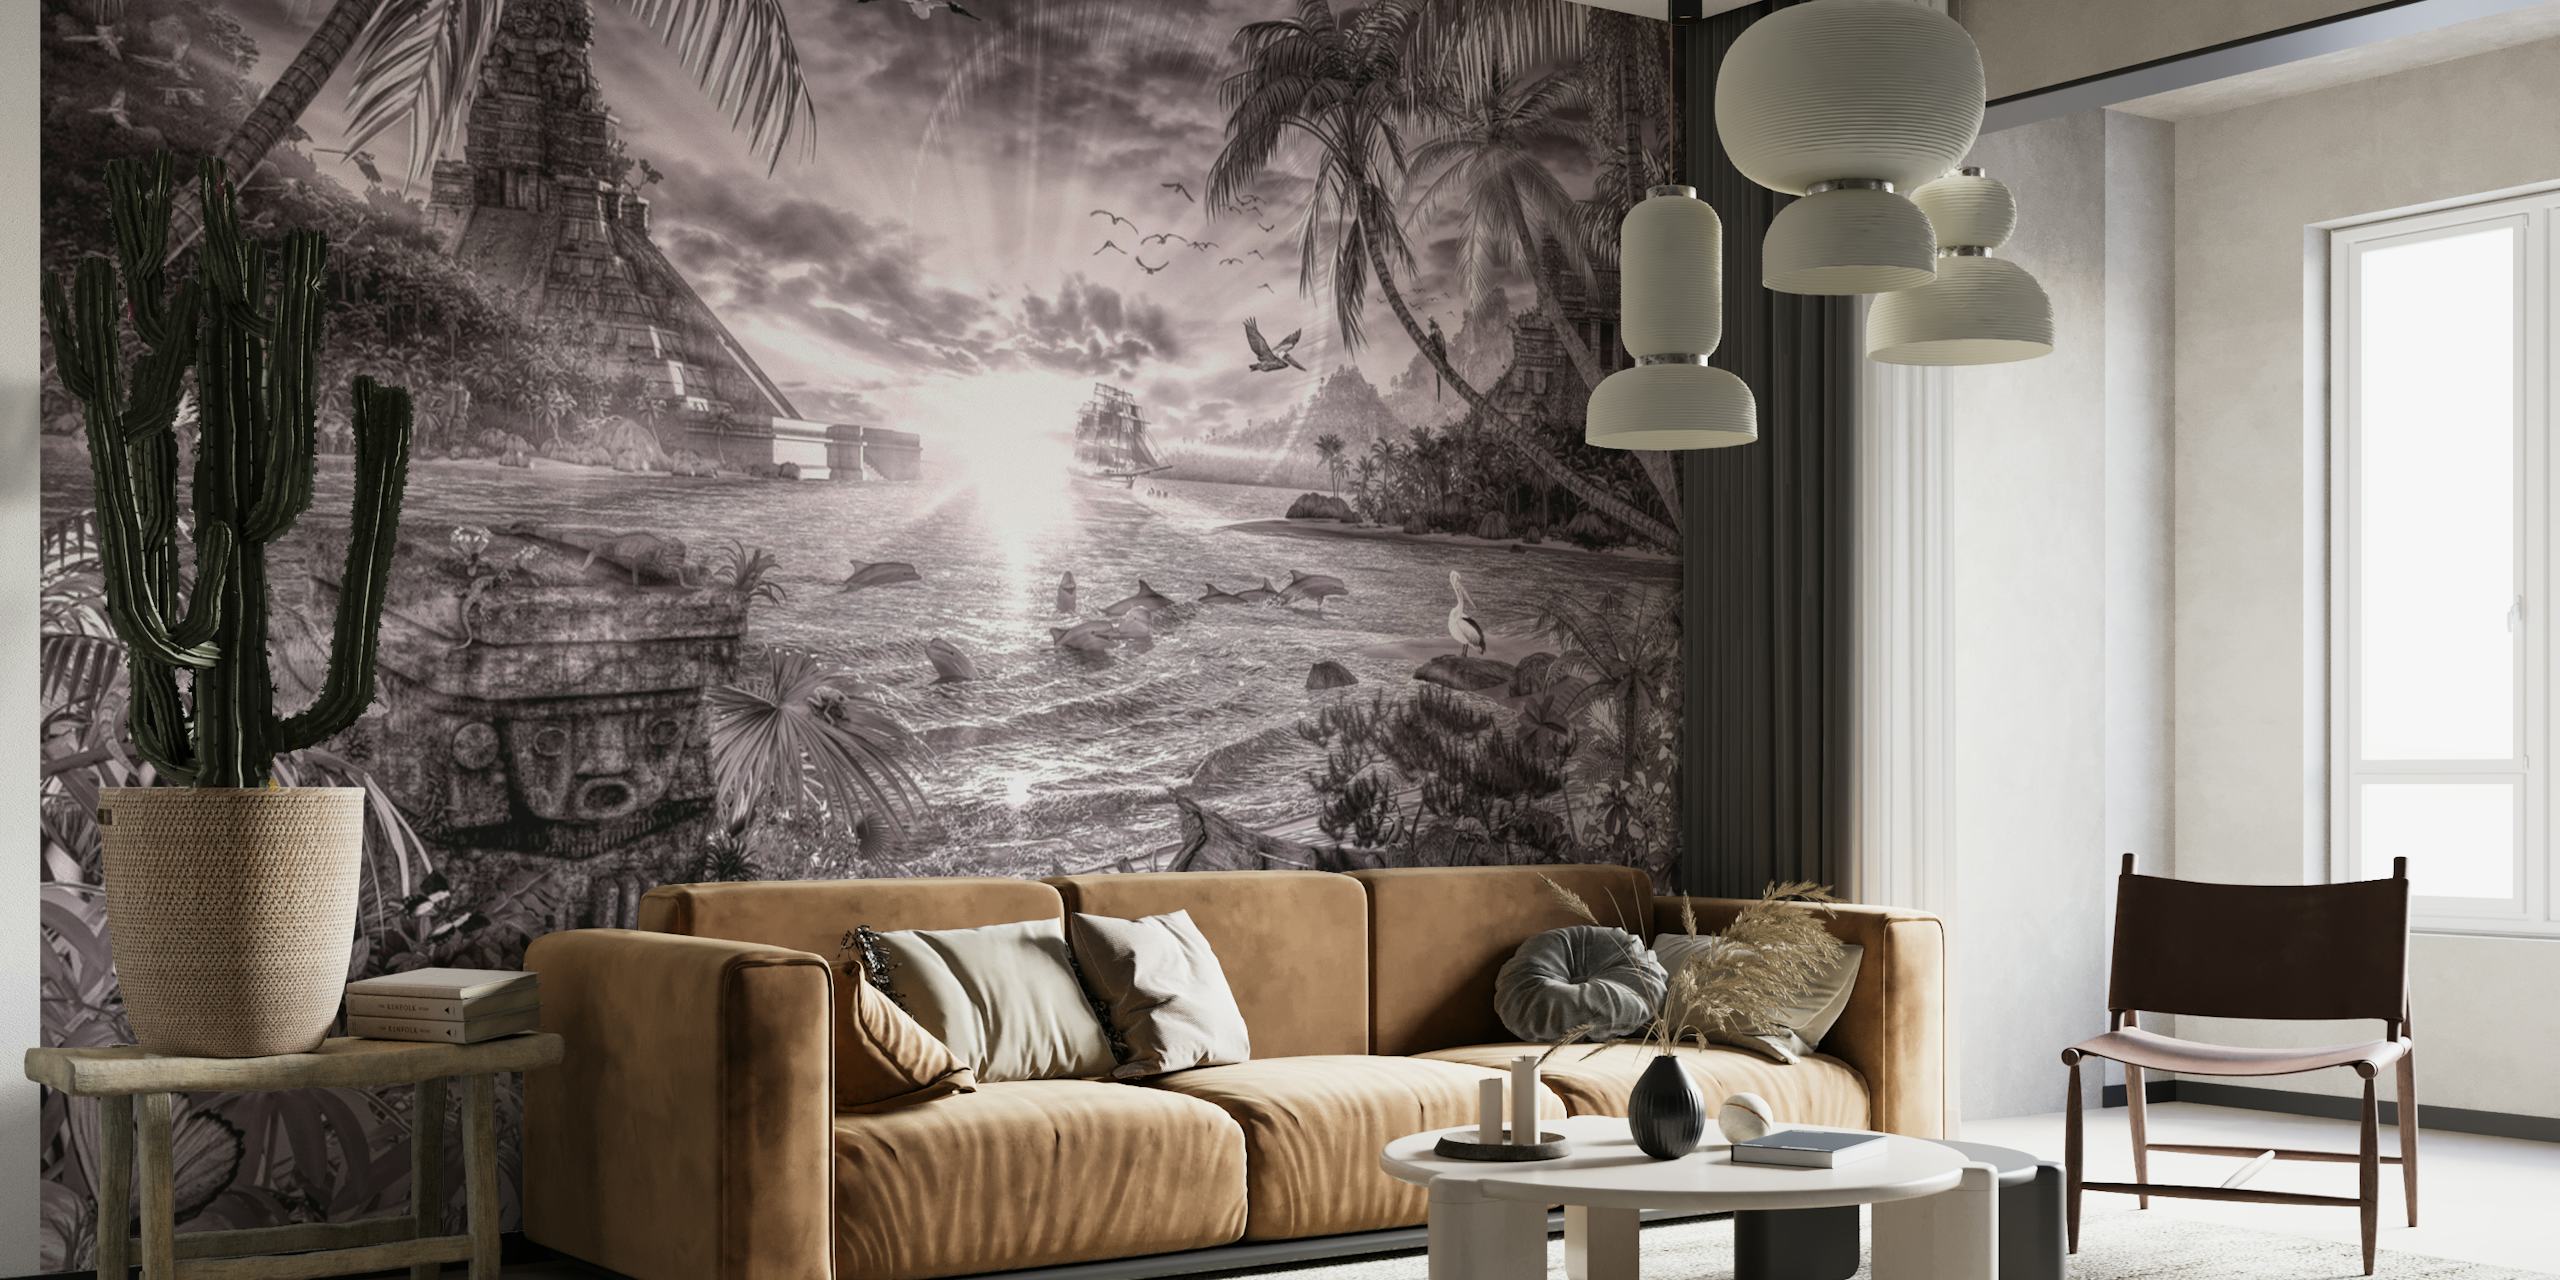 Peinture murale en noir et blanc représentant une baie mystique bordée de palmiers avec des rayons de soleil perçant le feuillage.